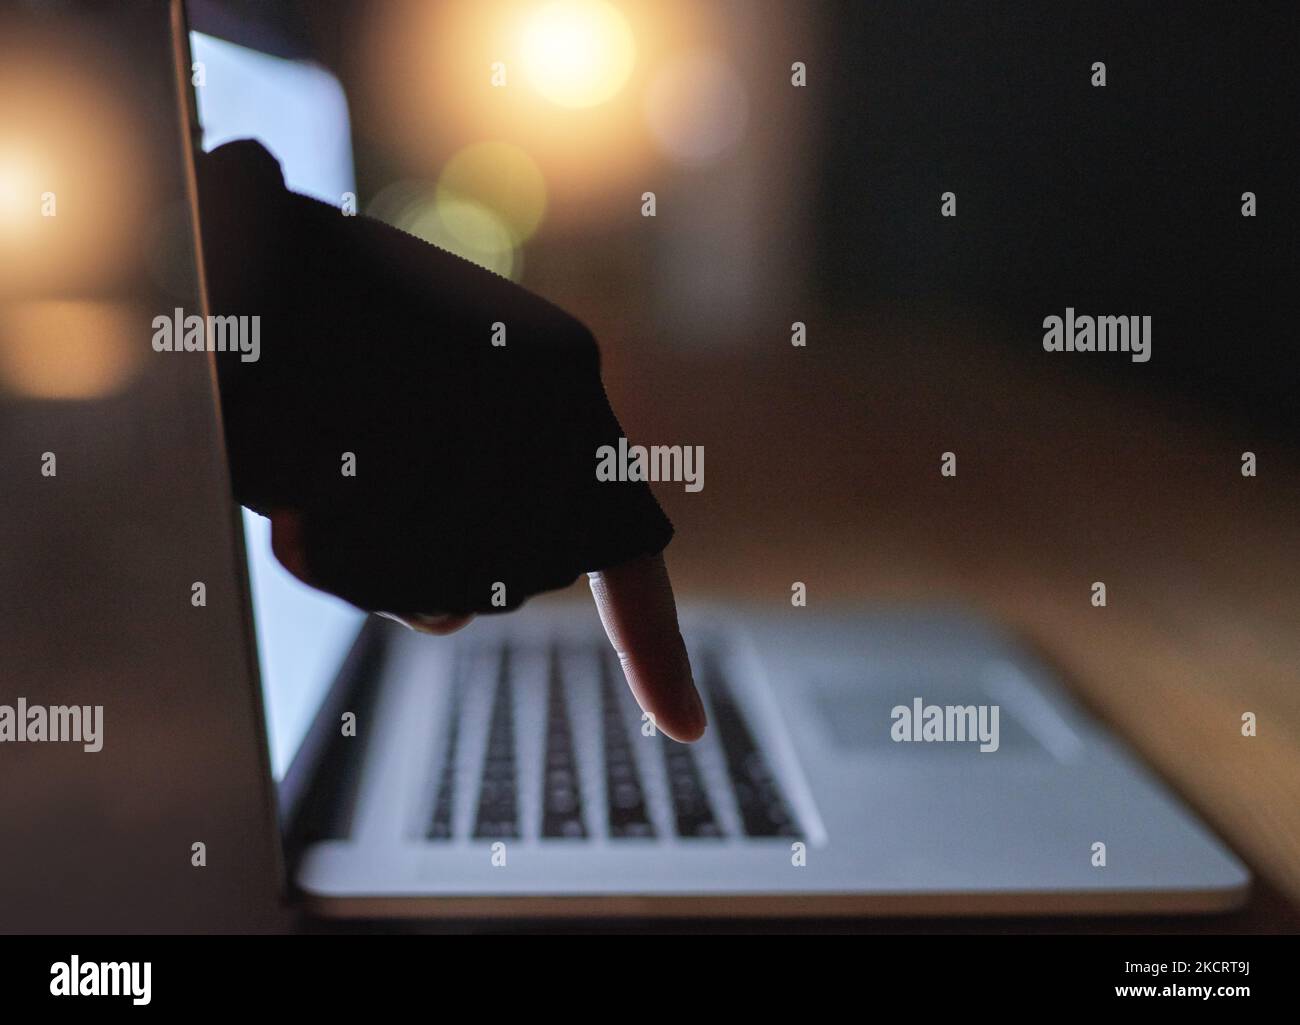 La cybercriminalité est une menace croissante pour tous. Un hackers a désincarné la main qui atteint à travers un écran d'ordinateur portable. Banque D'Images